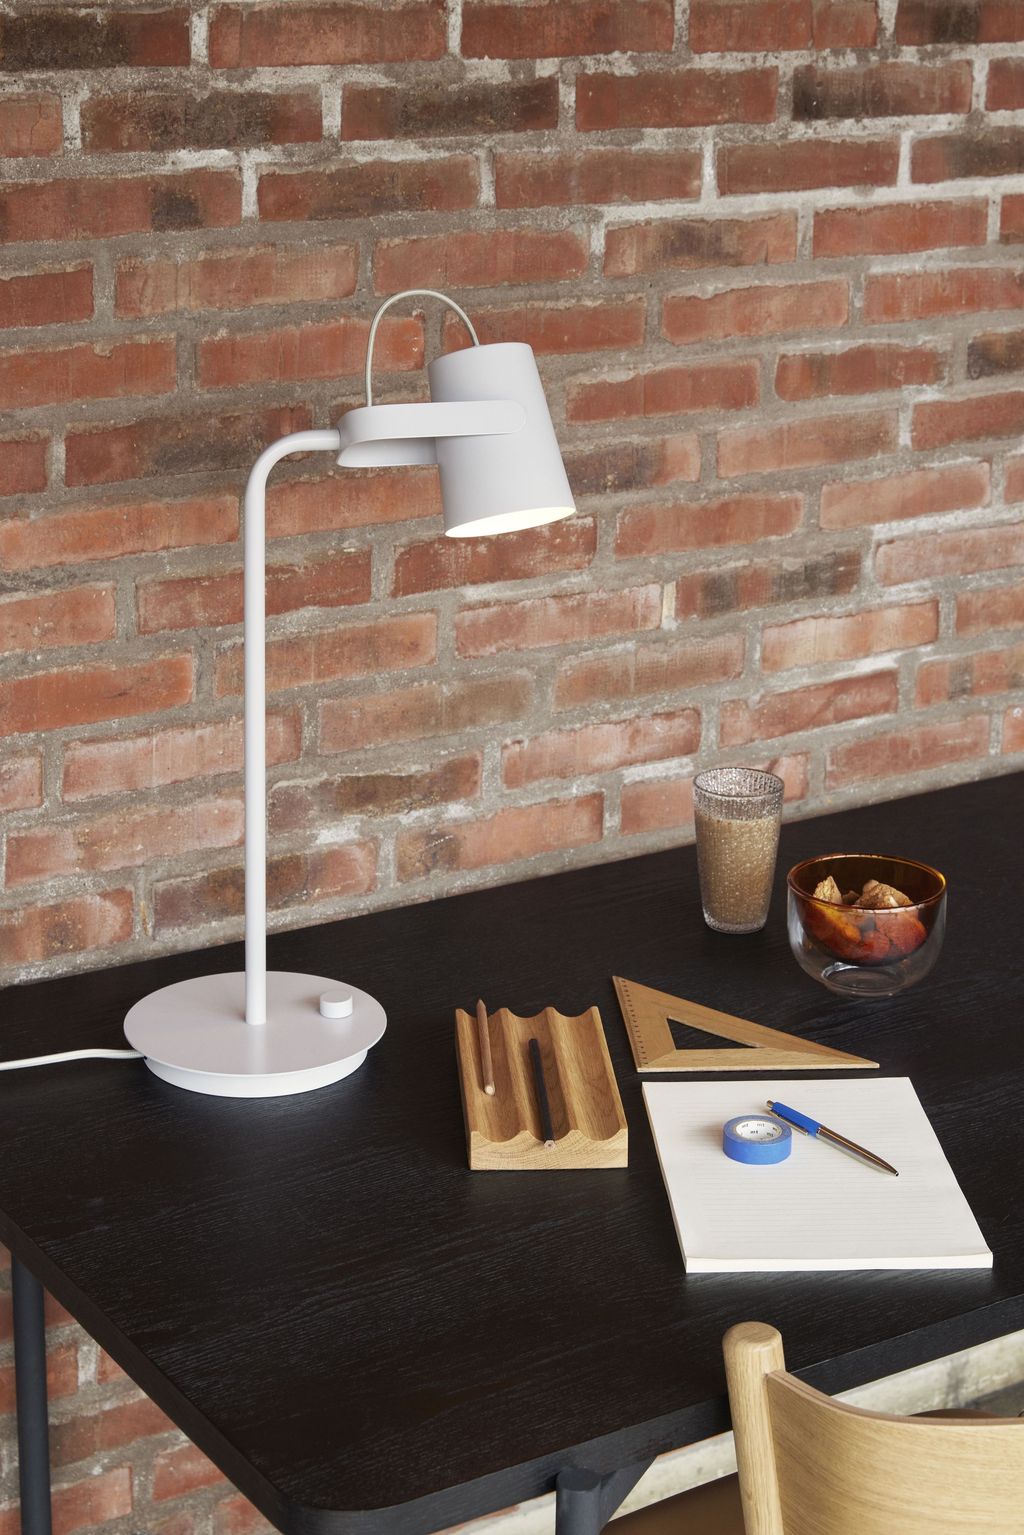 Hübsch Ardent Table Lamp, Light Grey